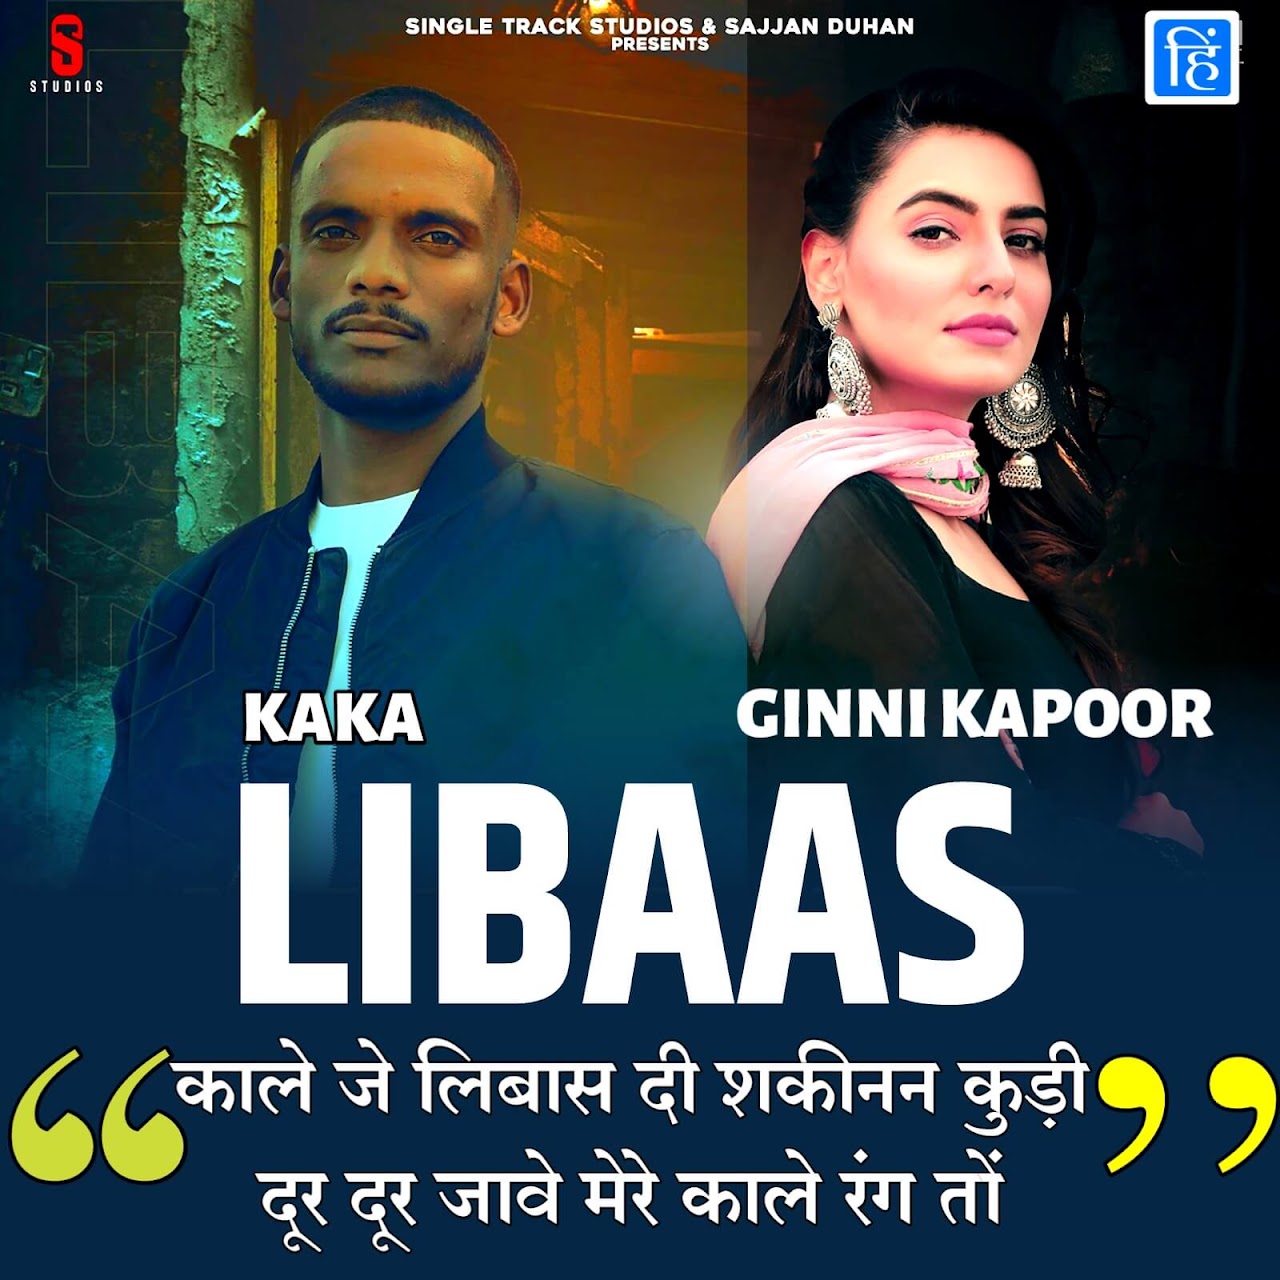 Libaas Lyrics In Hindi